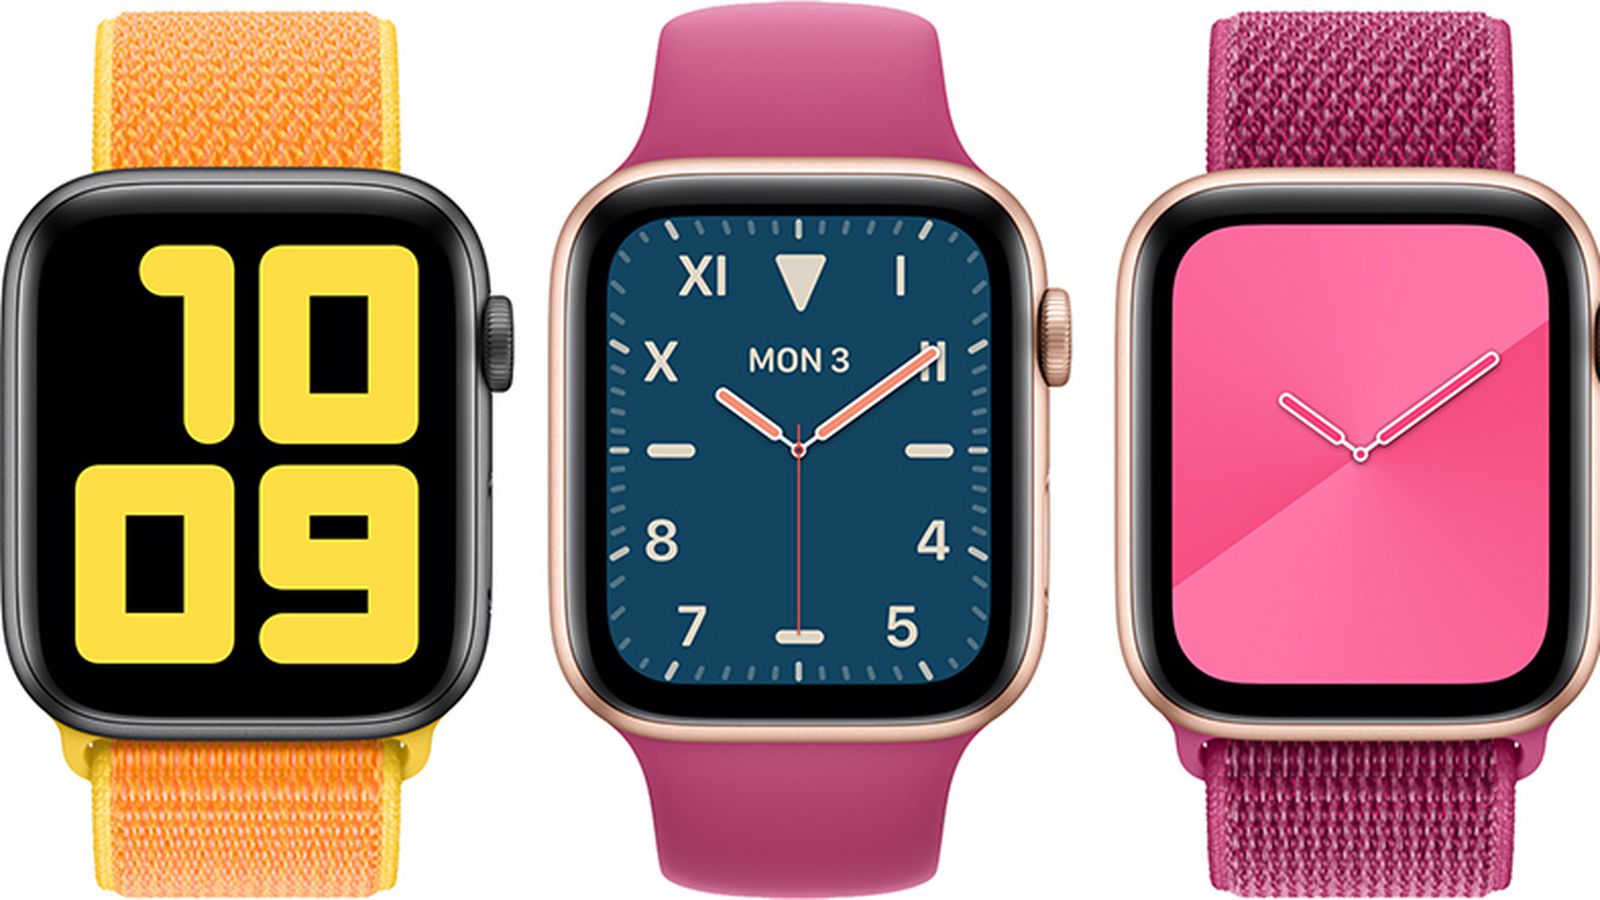 Apple Watch Series 6: Đây là phiên bản mới nhất của dòng đồng hồ thông minh Apple Watch của hãng. Với nhiều tính năng tiên tiến như đo lường oxy huyết, đo nhịp tim, đo nồng độ CO2, tiền đồng hồ cực đỉnh và các tính năng mới khác. Hãy xem hình ảnh để tìm hiểu và cảm nhận sự tiên tiến của chiếc đồng hồ này.